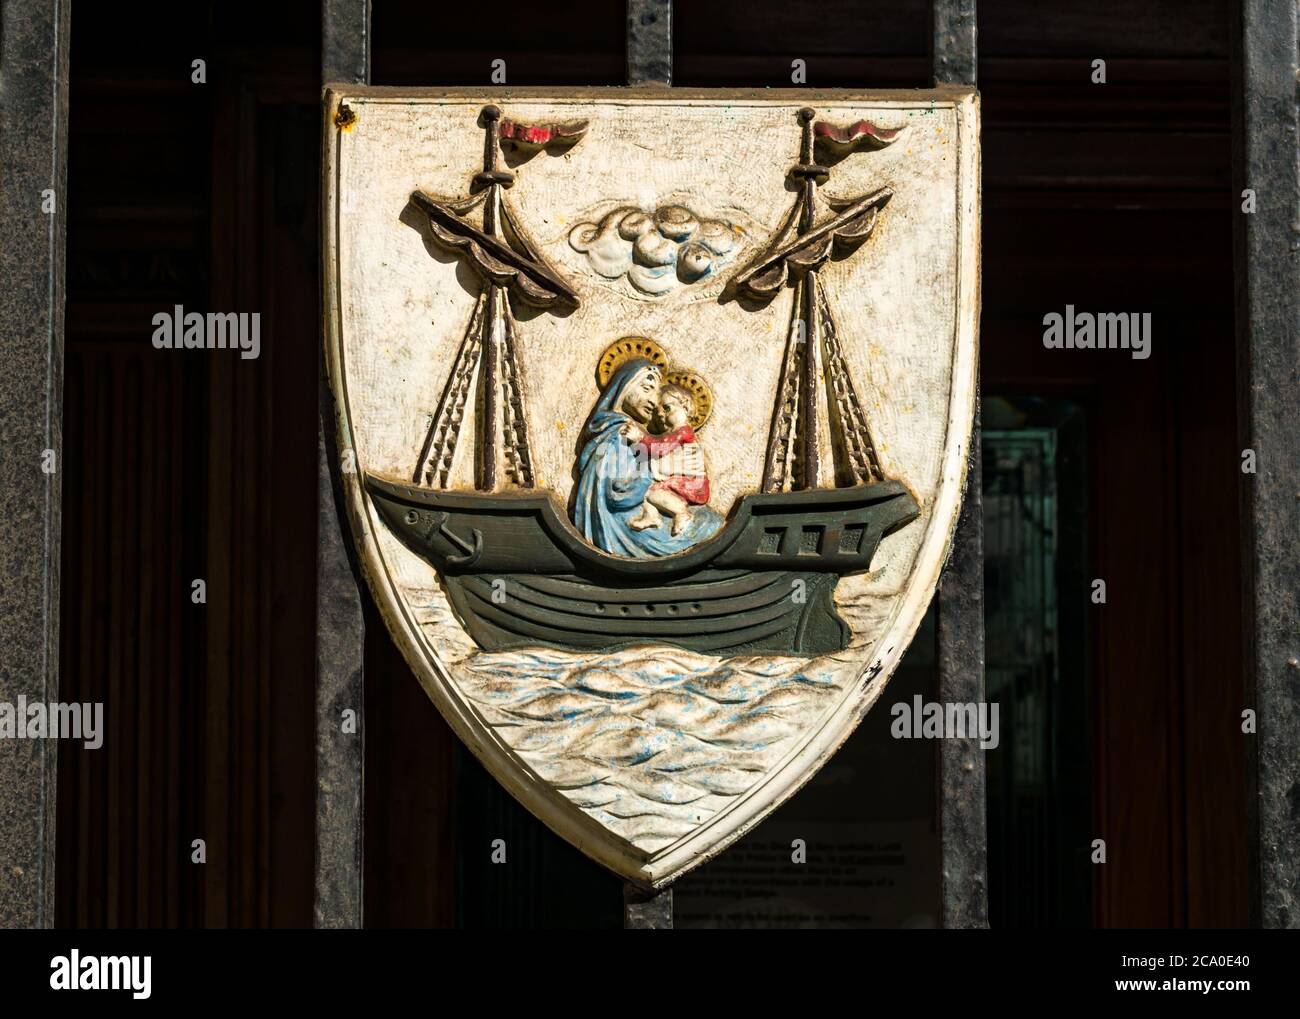 Escudo de armas Leith: El barco perseverar, la Virgen María y el niño Jesús en la estación de policía antes ayuntamiento, Edimburgo, Escocia, Reino Unido Foto de stock